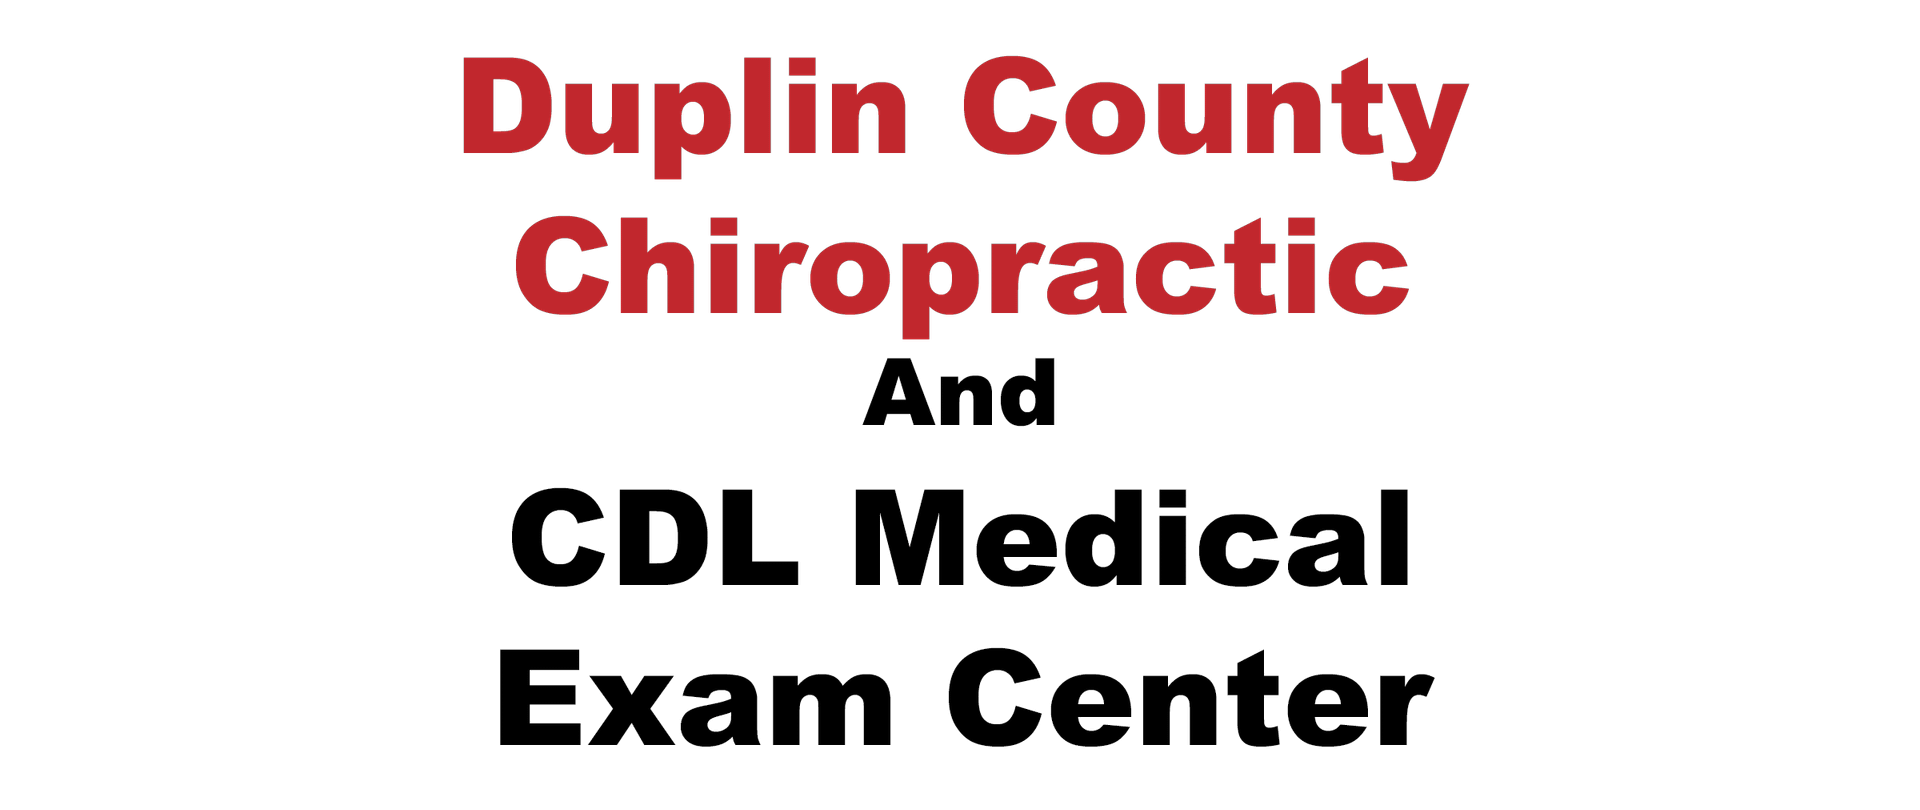 Duplin County Chiropractic Center